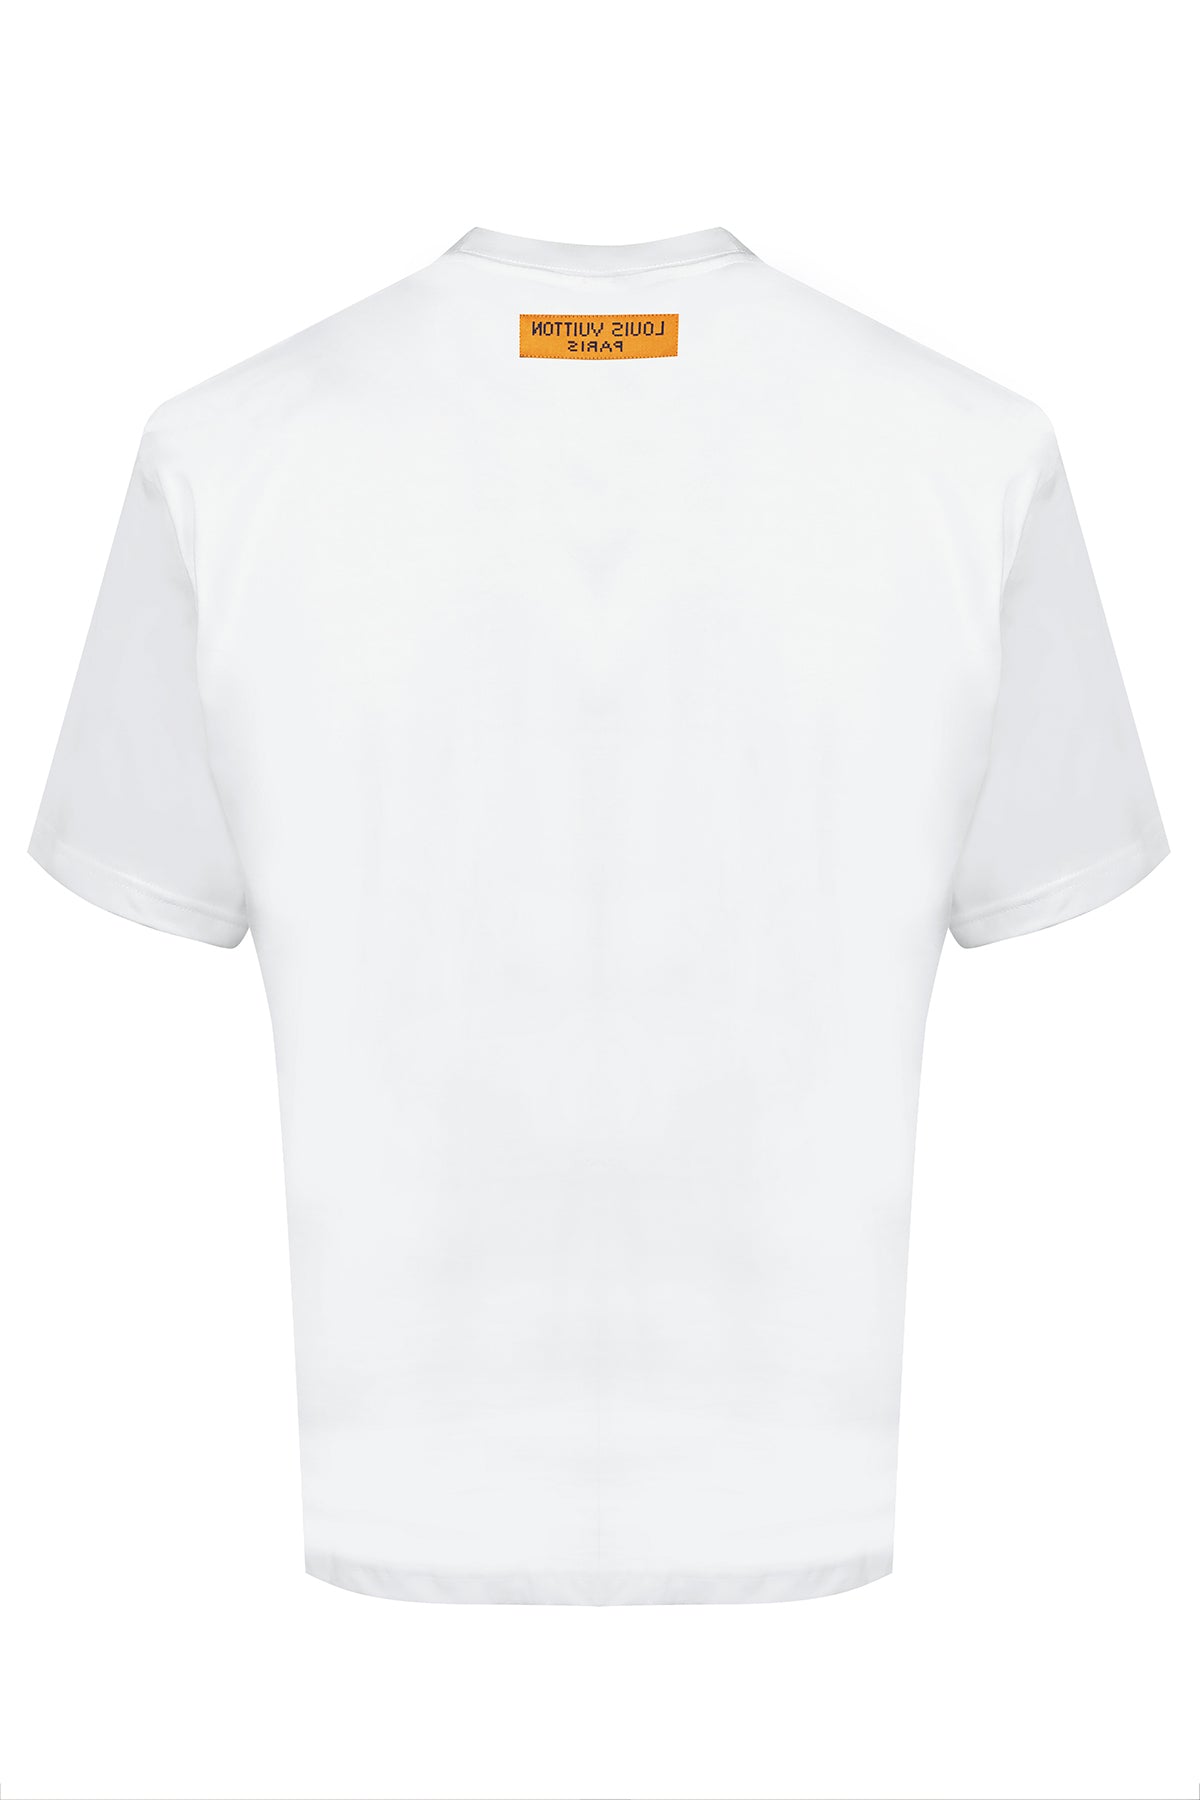 Louis Vuitton Graphic Short Sleeved Crewneck Tshirt White – Tenisshop.la